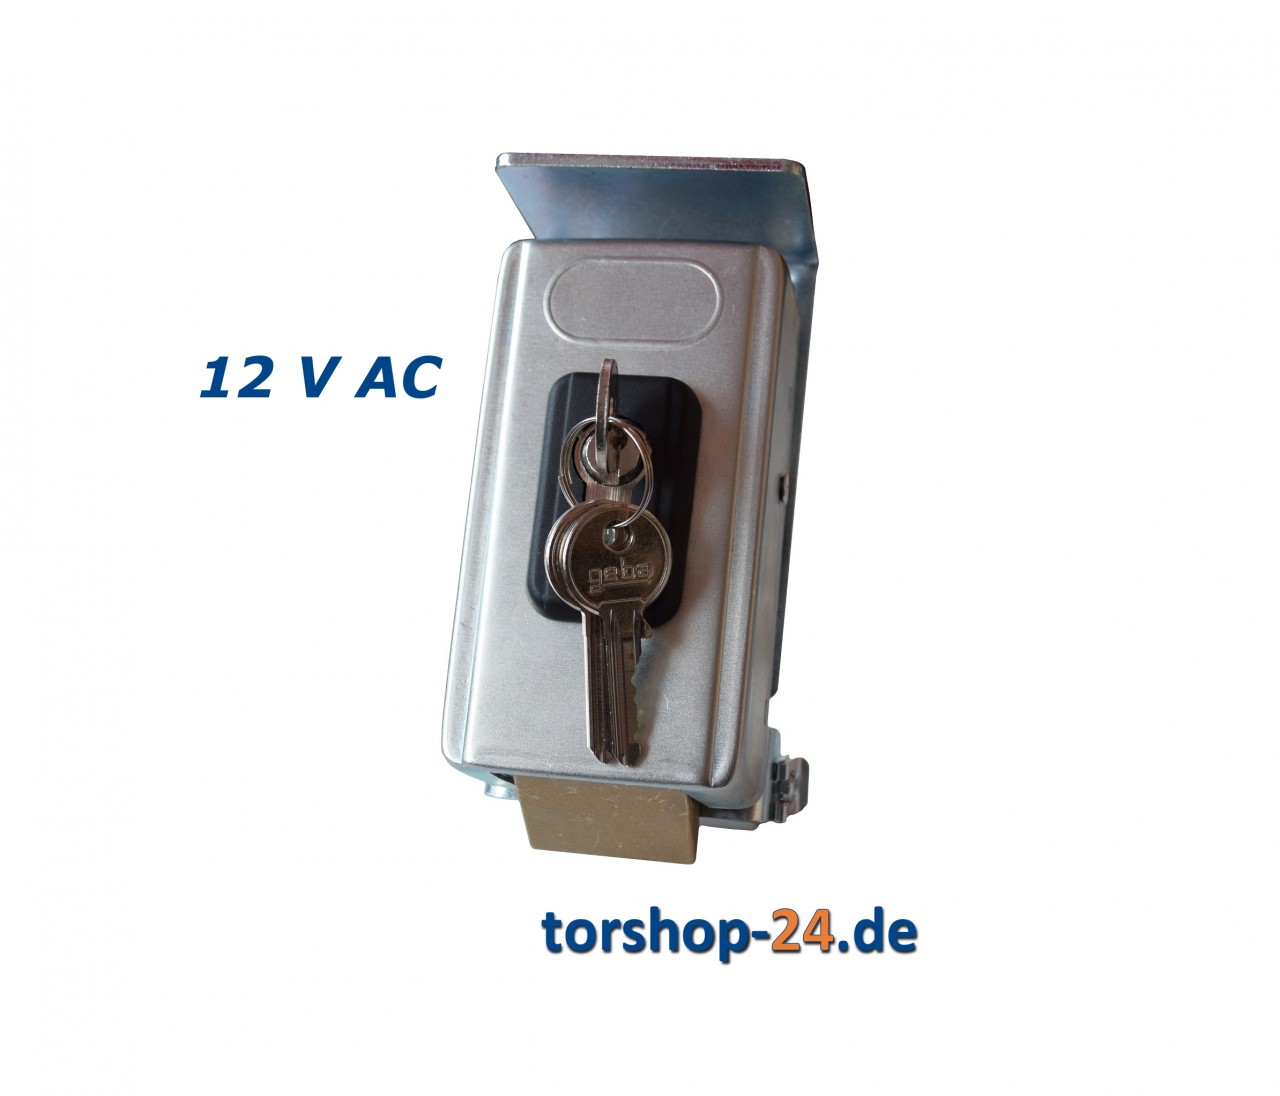 Hörmann 12 V Elektroschloss für Drehtorantriebe (Bodenverriegelung)